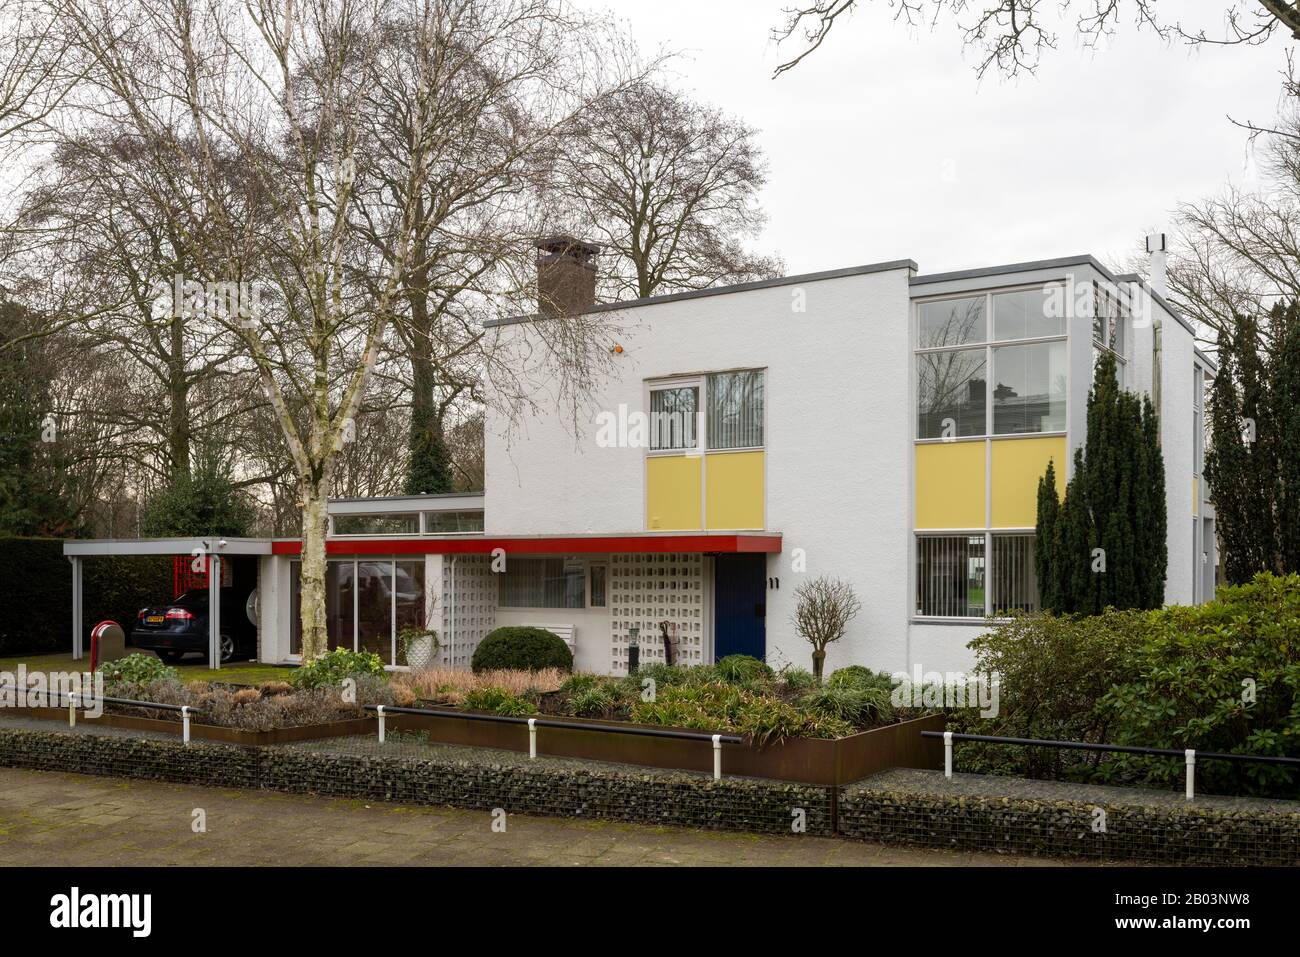 Utrecht, Haus Theissing, 1958-1960 von Gerrit Rietveld erbaut, Straßenseite Stock Photo